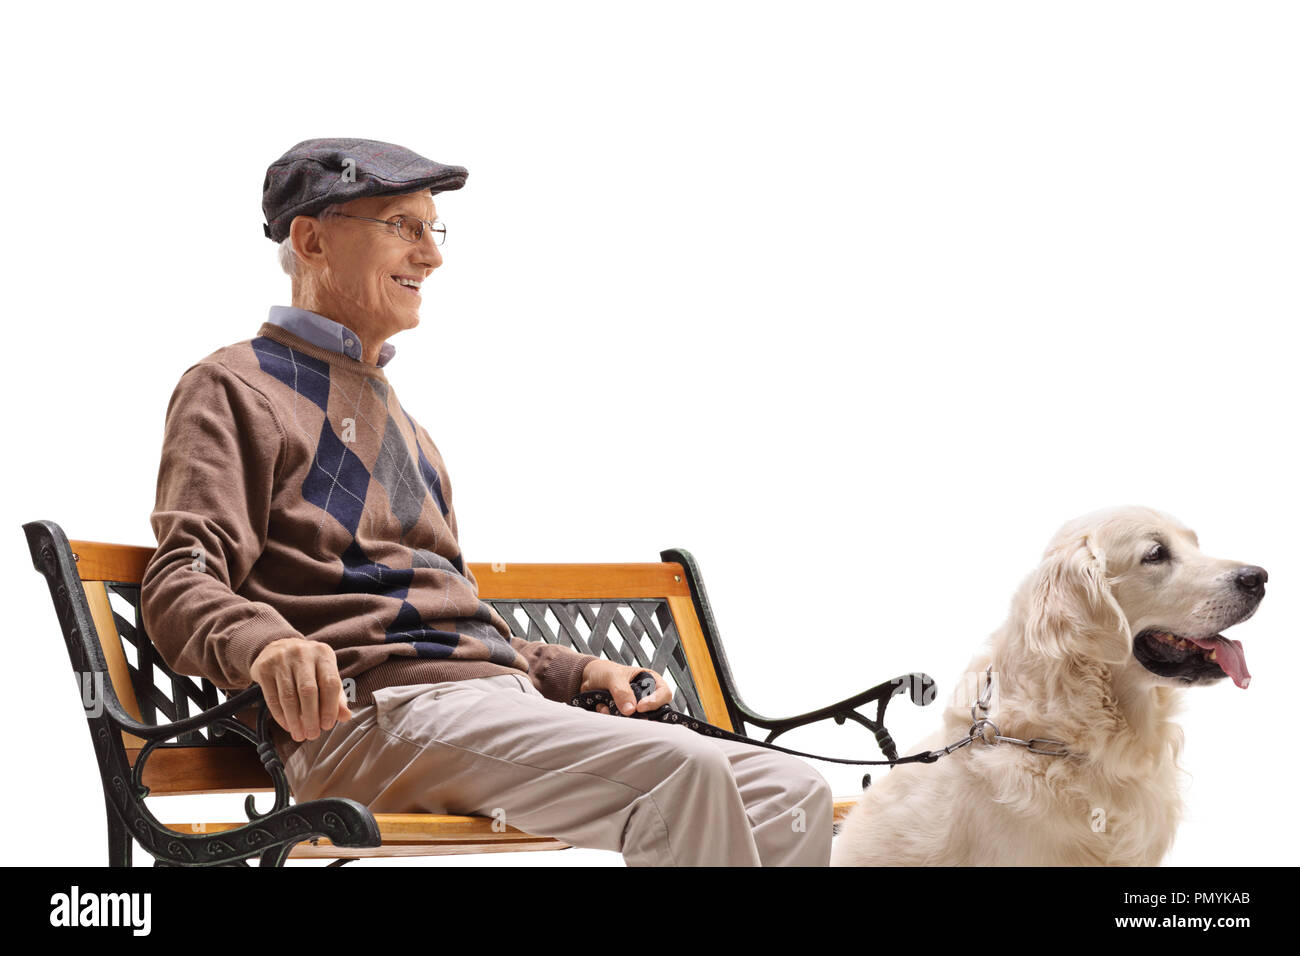 Hauts avec un chien assis sur un banc isolé sur fond blanc Banque D'Images